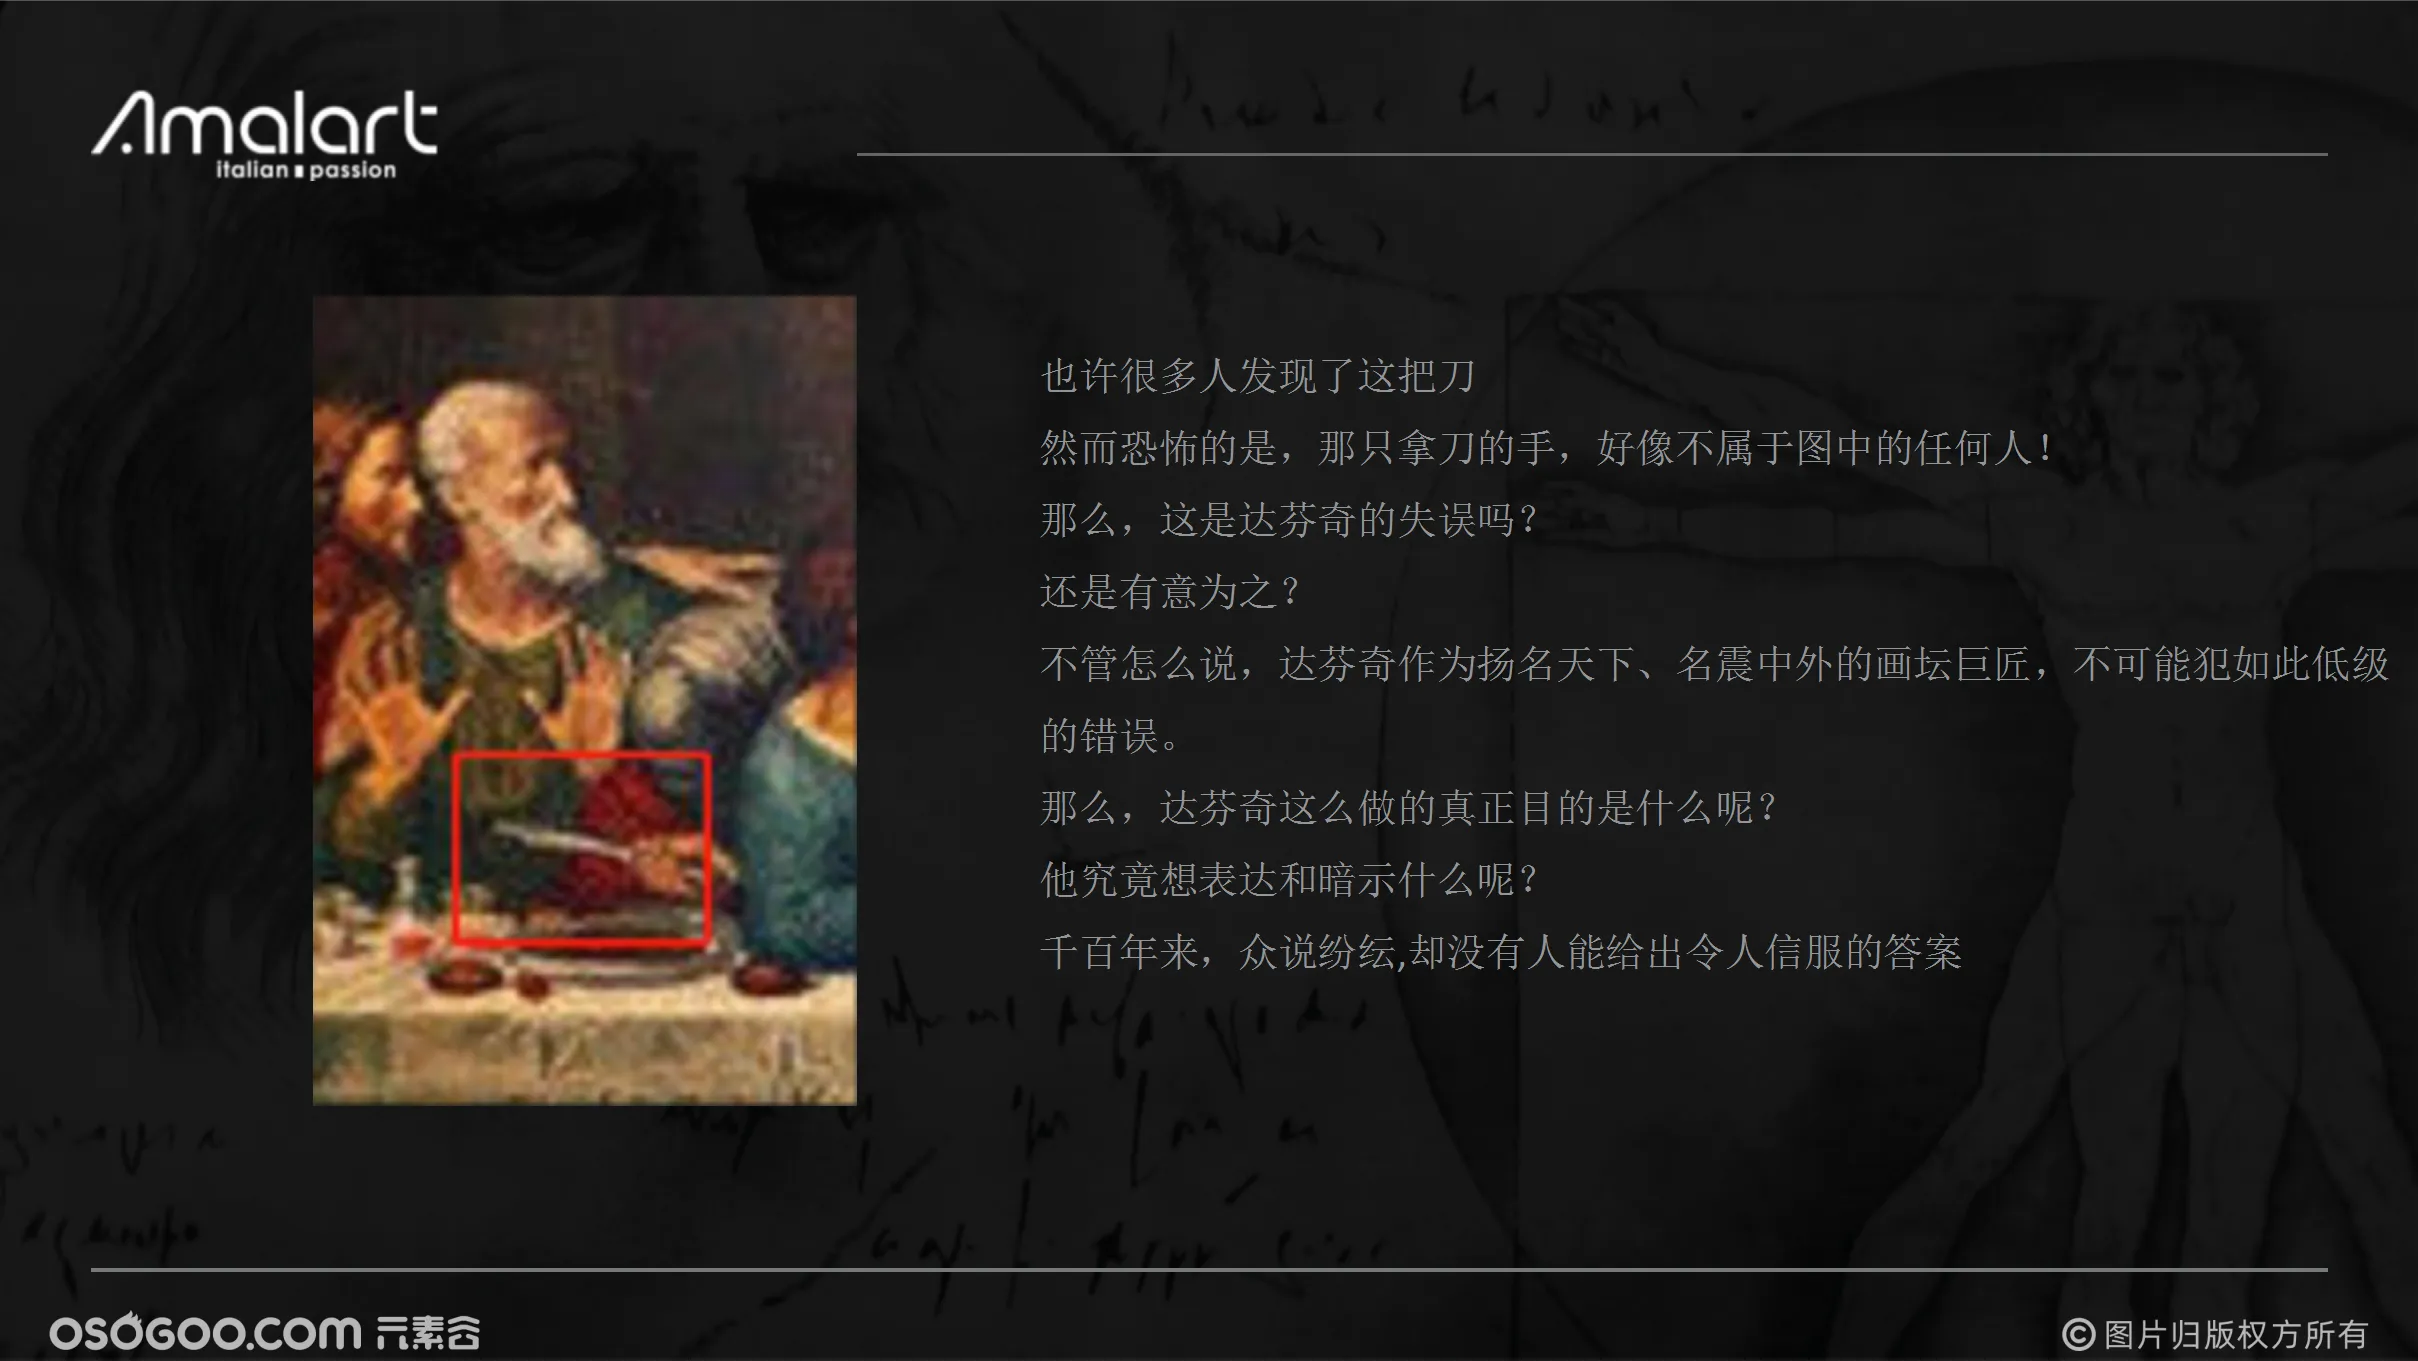 法国皇家图书馆馆藏.达芬奇手稿中国巡展